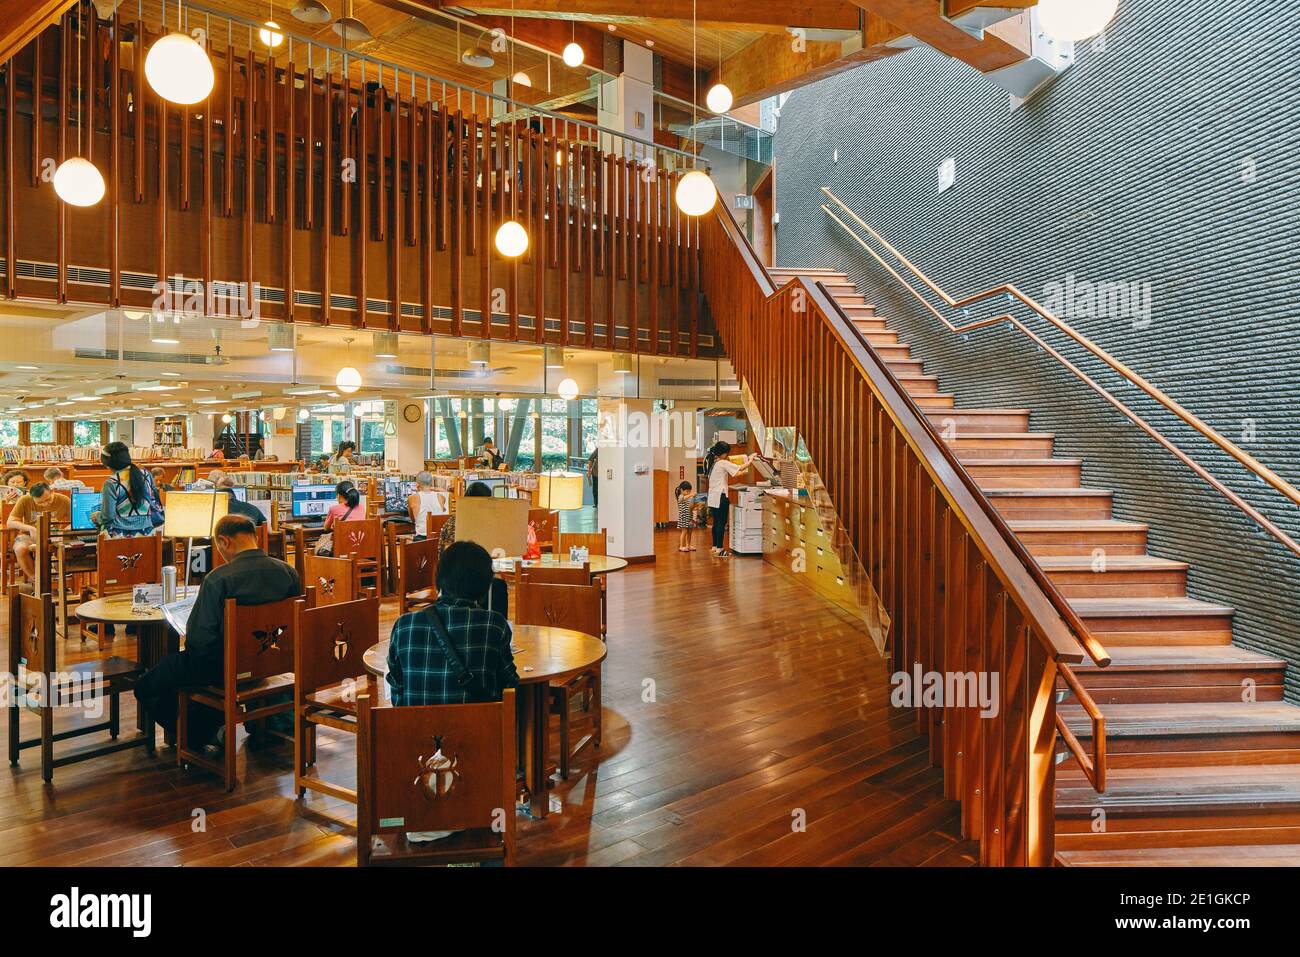 All'interno della biblioteca pubblica di Beitou, Taipei, la prima biblioteca verde di Taiwan, uno degli edifici più efficienti dal punto di vista energetico e rispettosi dell'ambiente dell'Asia orientale. Foto Stock